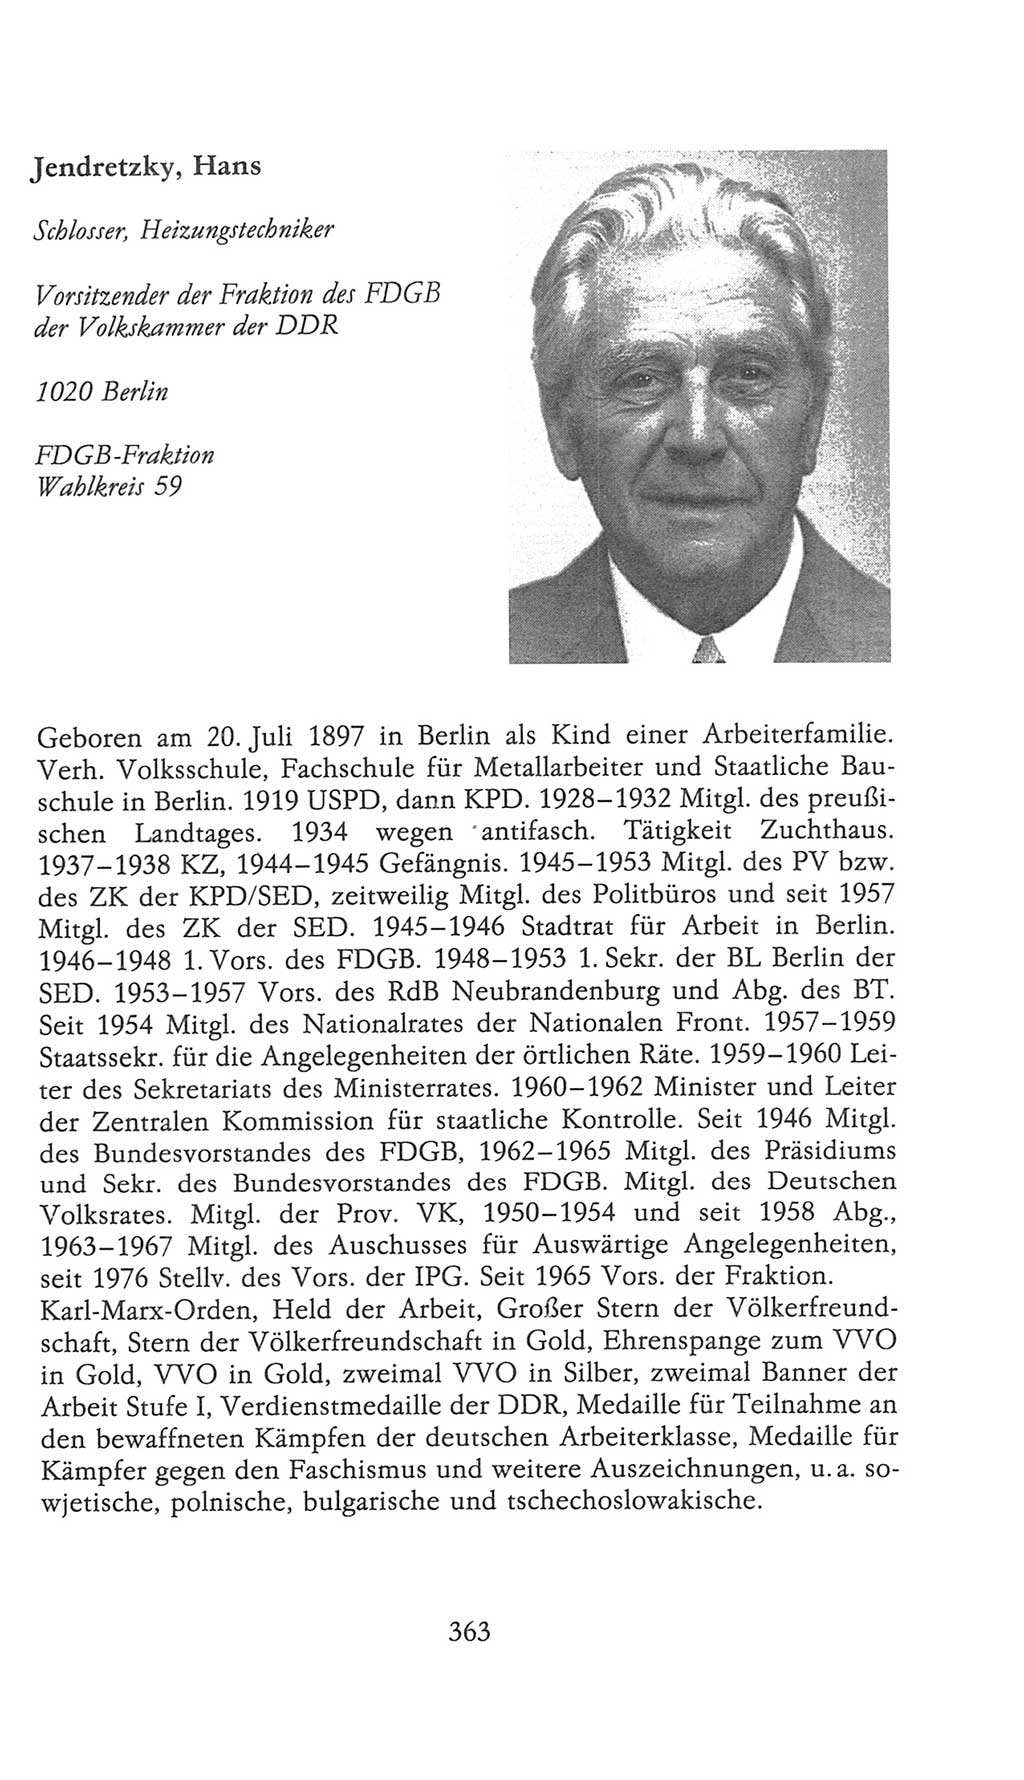 Volkskammer (VK) der Deutschen Demokratischen Republik (DDR), 9. Wahlperiode 1986-1990, Seite 363 (VK. DDR 9. WP. 1986-1990, S. 363)